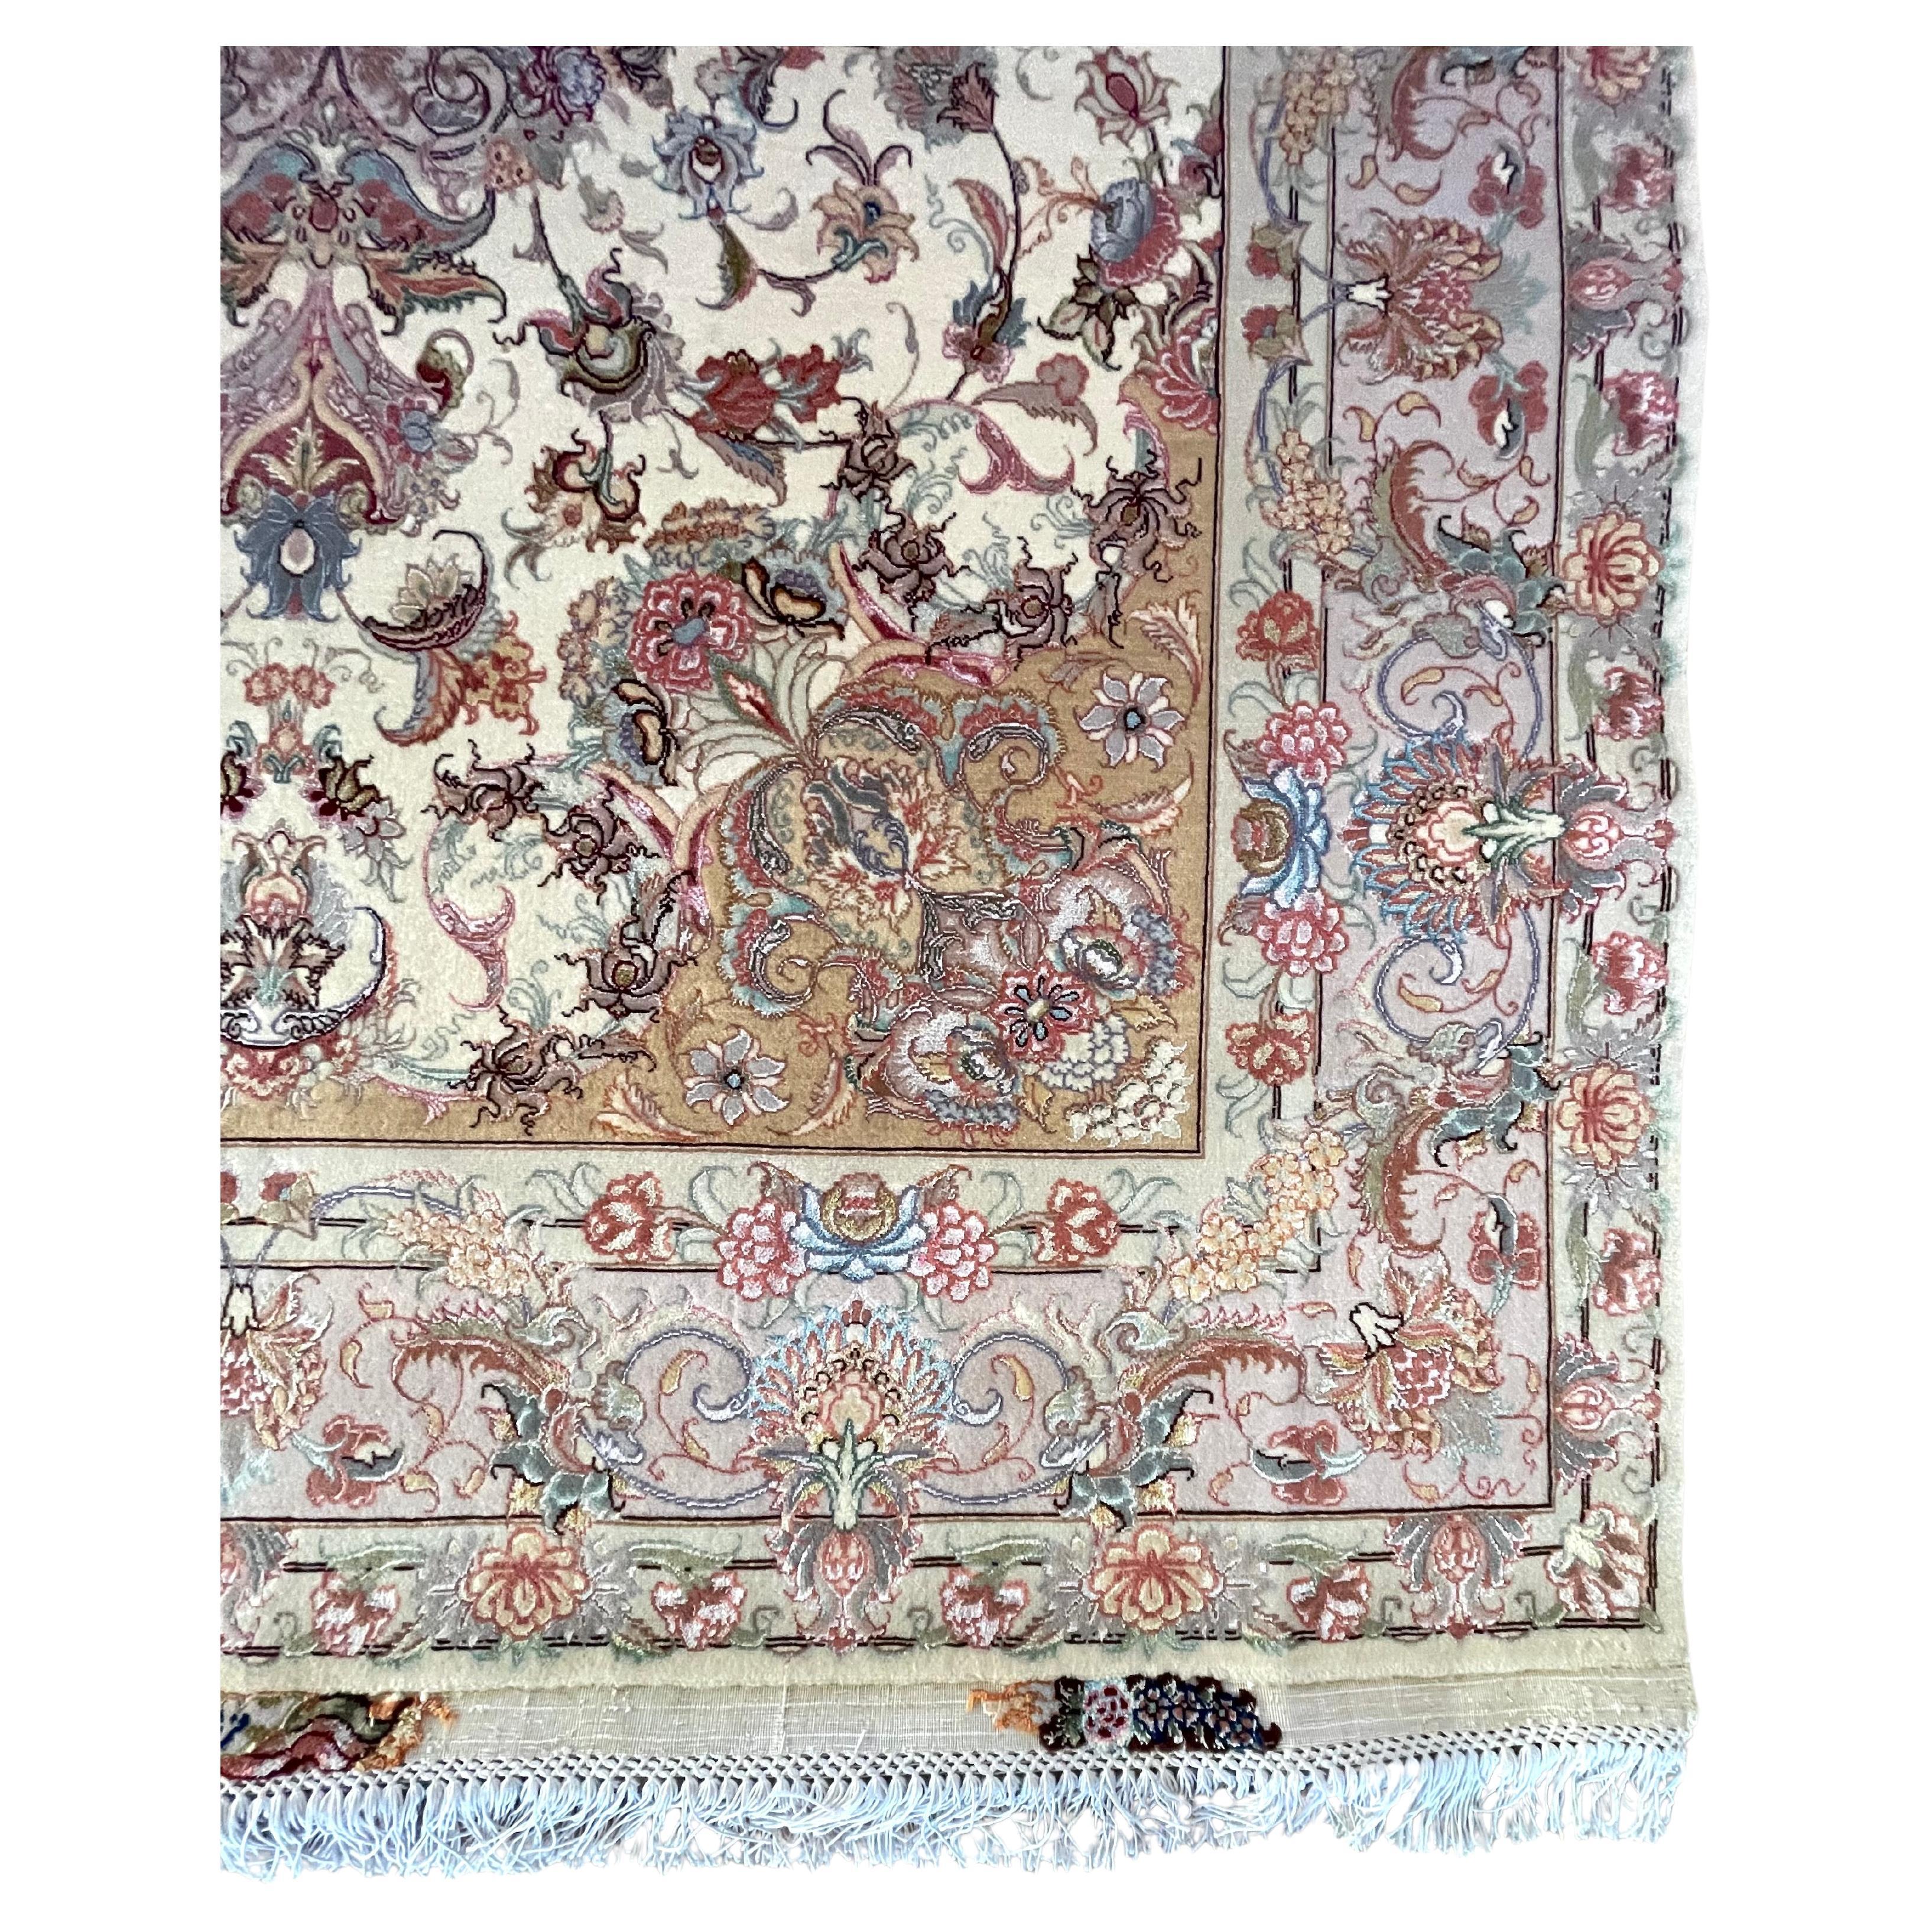 Voici un superbe tapis persan Tabriz noué à la main qui incarne la qualité de l'artisanat et la beauté intemporelle. Doté d'un ravissant motif floral en médaillon signé Zamani, ce tapis séduit par son mélange unique de couleurs et de motifs et par